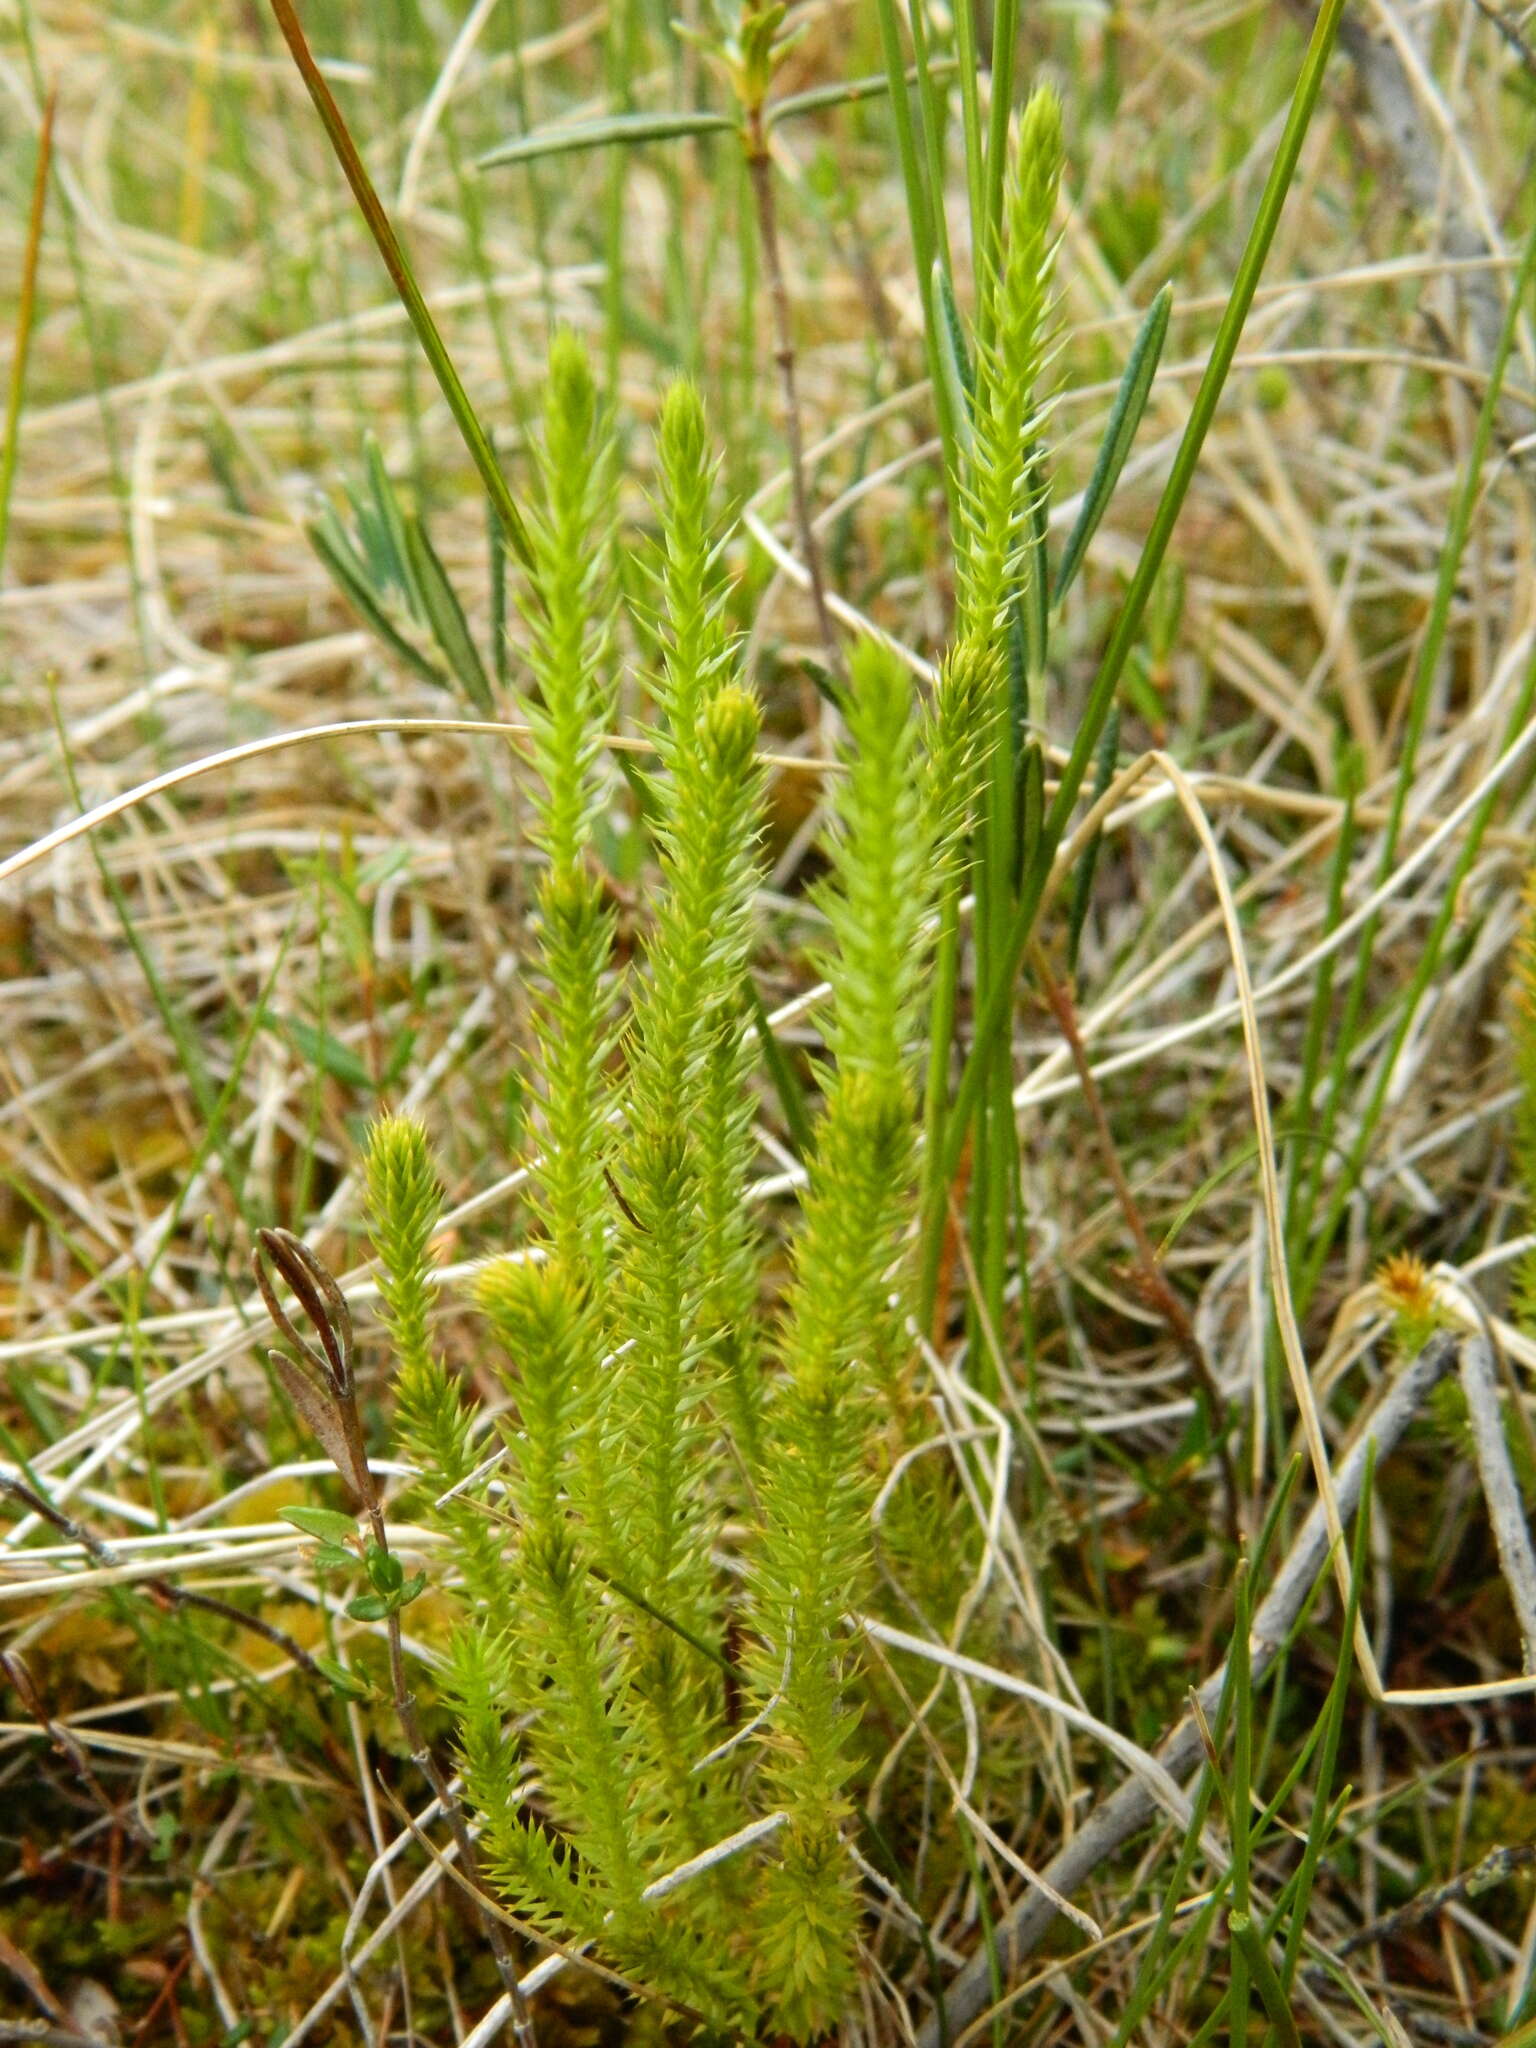 Image of Spinulum annotinum subsp. dubium (Zoega)